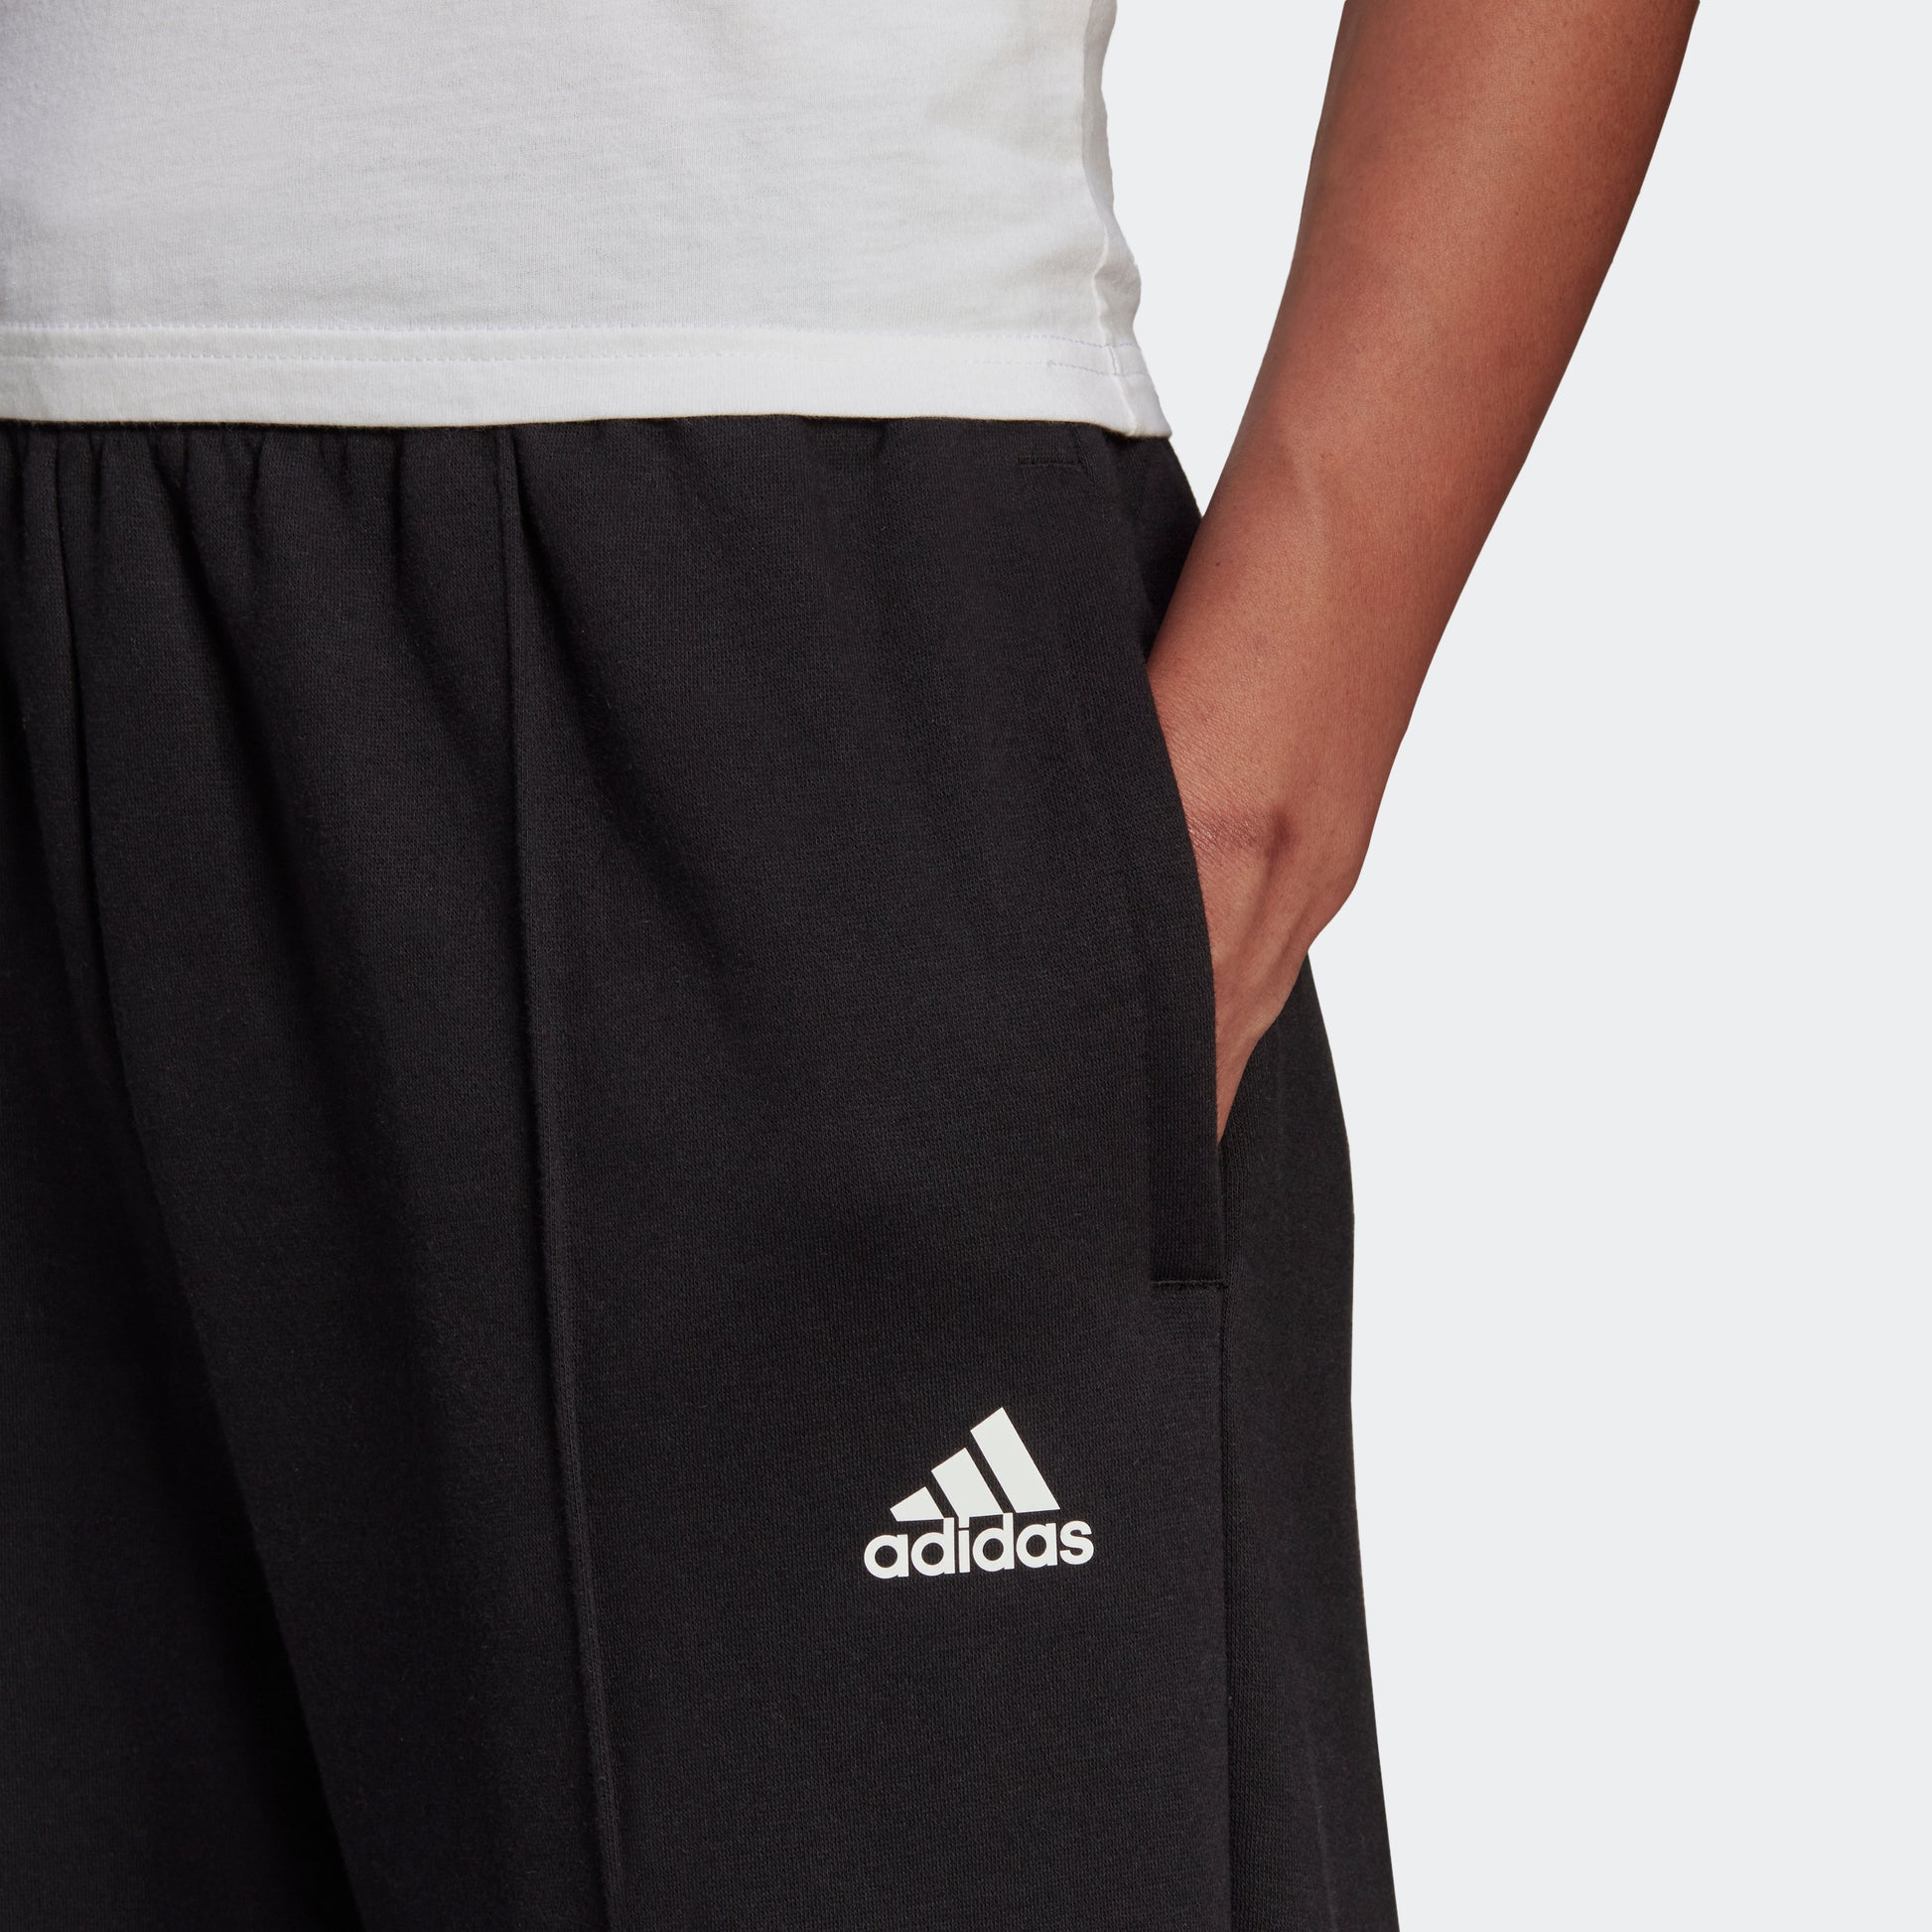 Women's Adidas Essential Studio Fleece Pants – Brine Sporting Goods